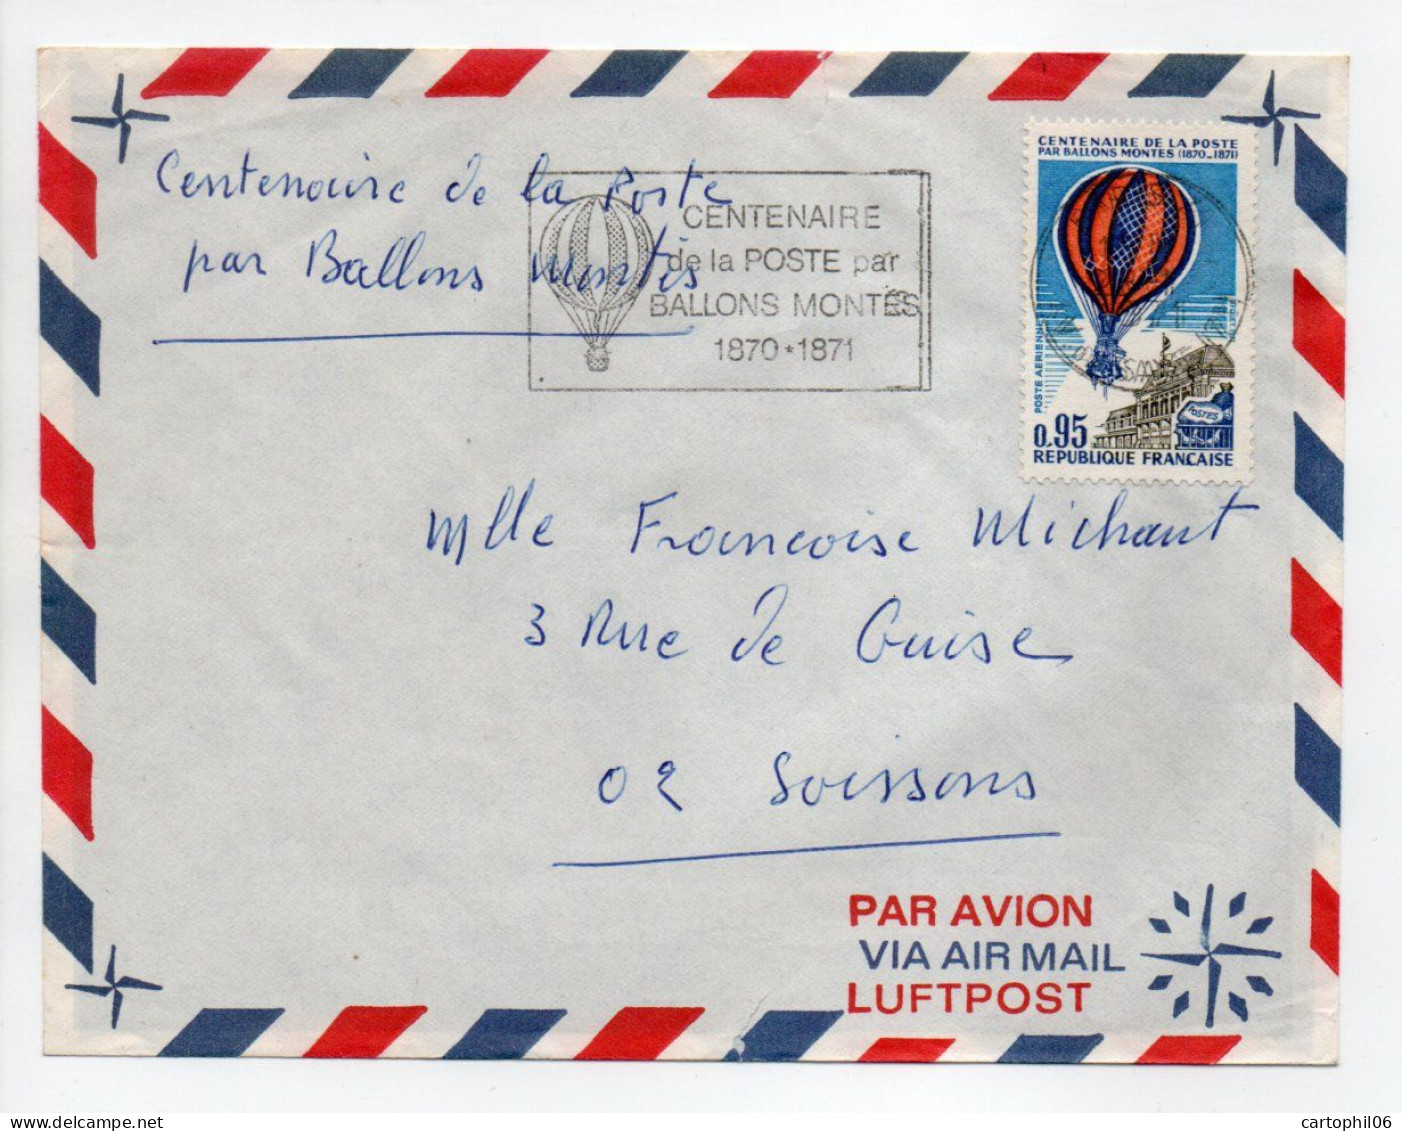 - Lettre CENTENAIRE DE LA POSTE PAR BALLONS MONTÉS 1870-1871 - - Montgolfier